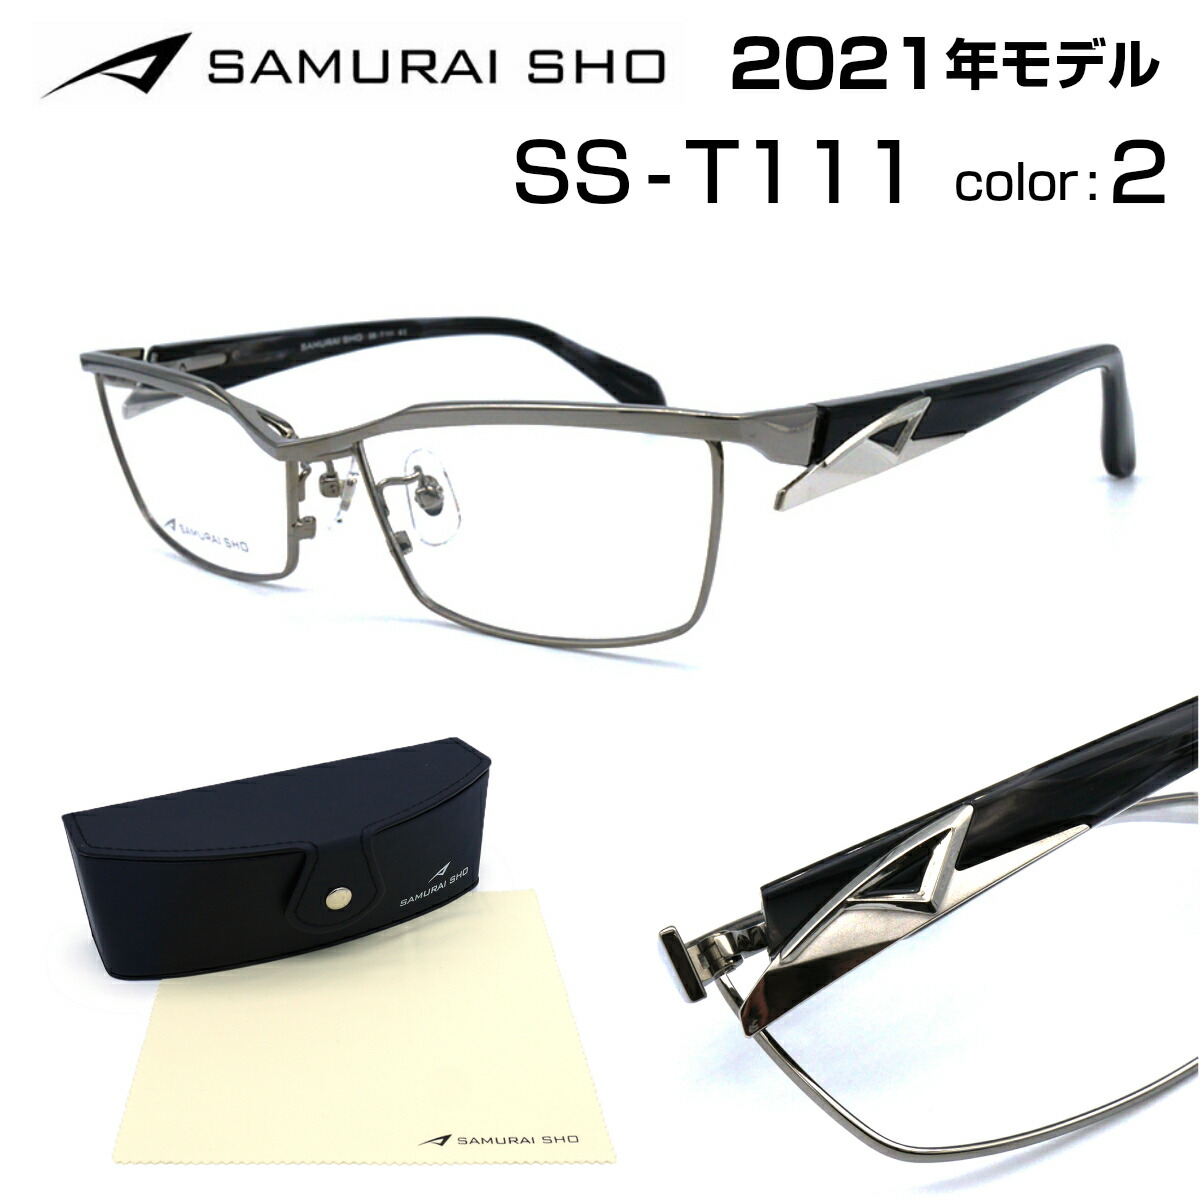 NEW低価2022年 最新モデル サムライ翔 SS-T116 #3 SAMURAI SHO サングラス/メガネ